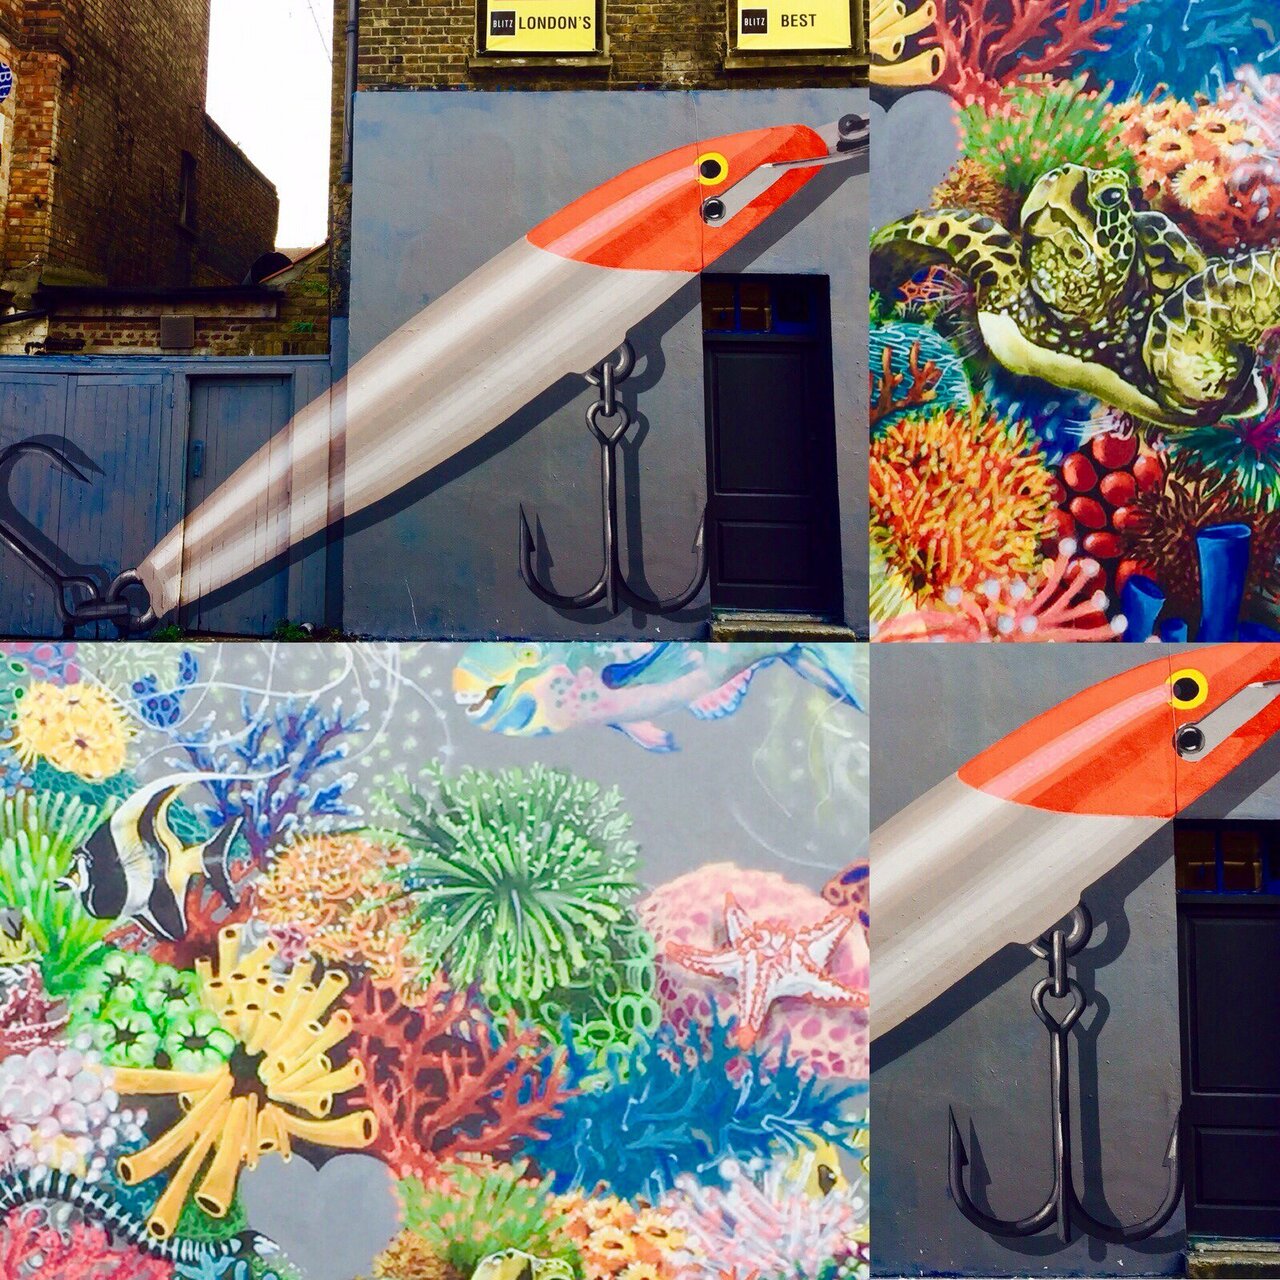 #ocean #graffiti #london can be seen @towerhamlets #potd #instaphoto #instacool ✌️we are A huge fan of #streetart https://t.co/oTJsWAt8dZ